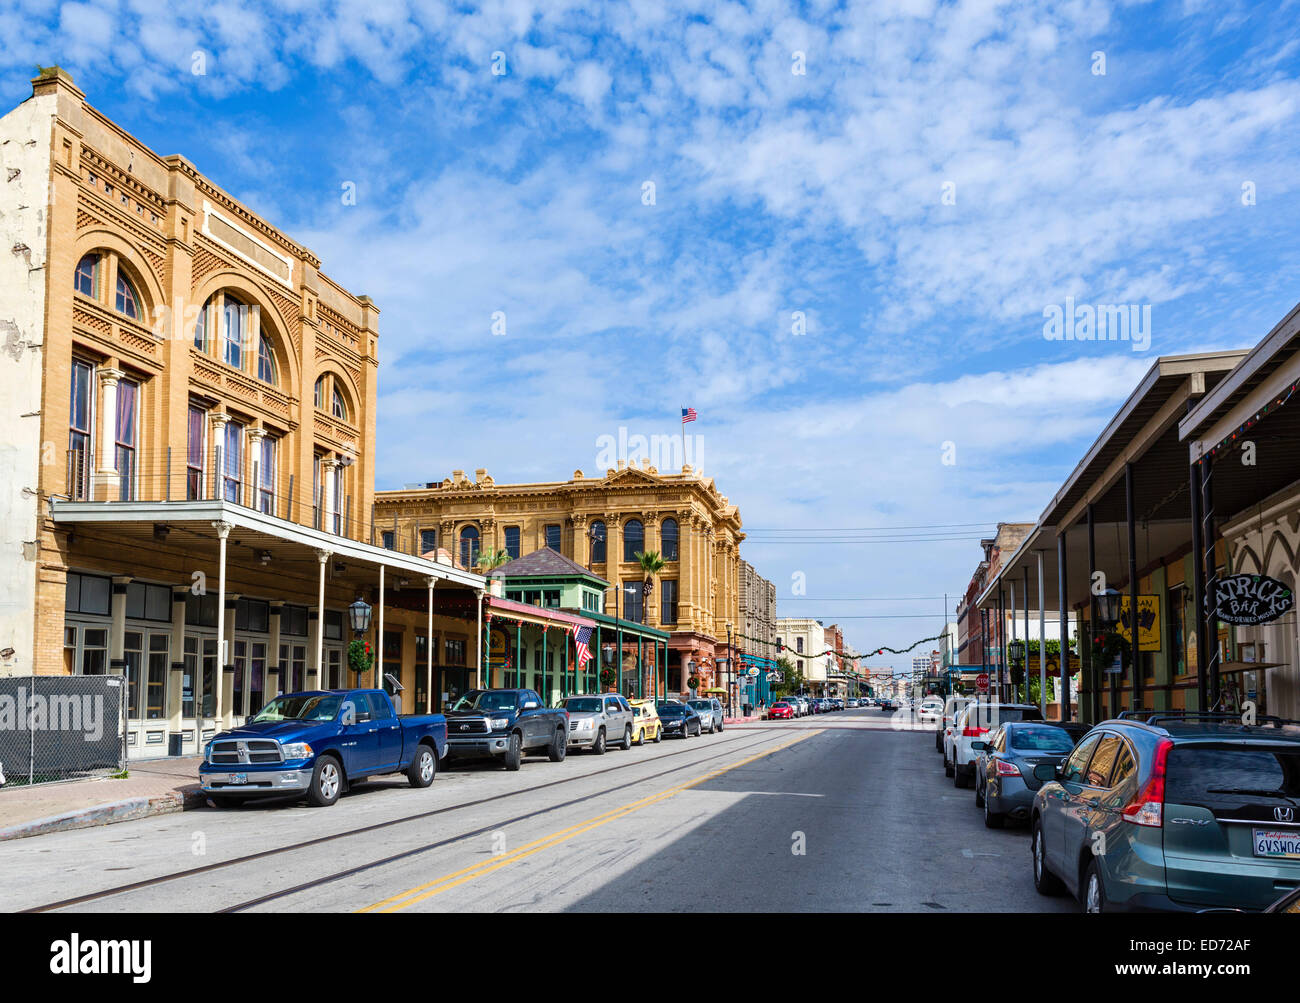 Le Strand dans la vieille ville historique de centre-ville de Galveston, Texas, États-Unis Banque D'Images